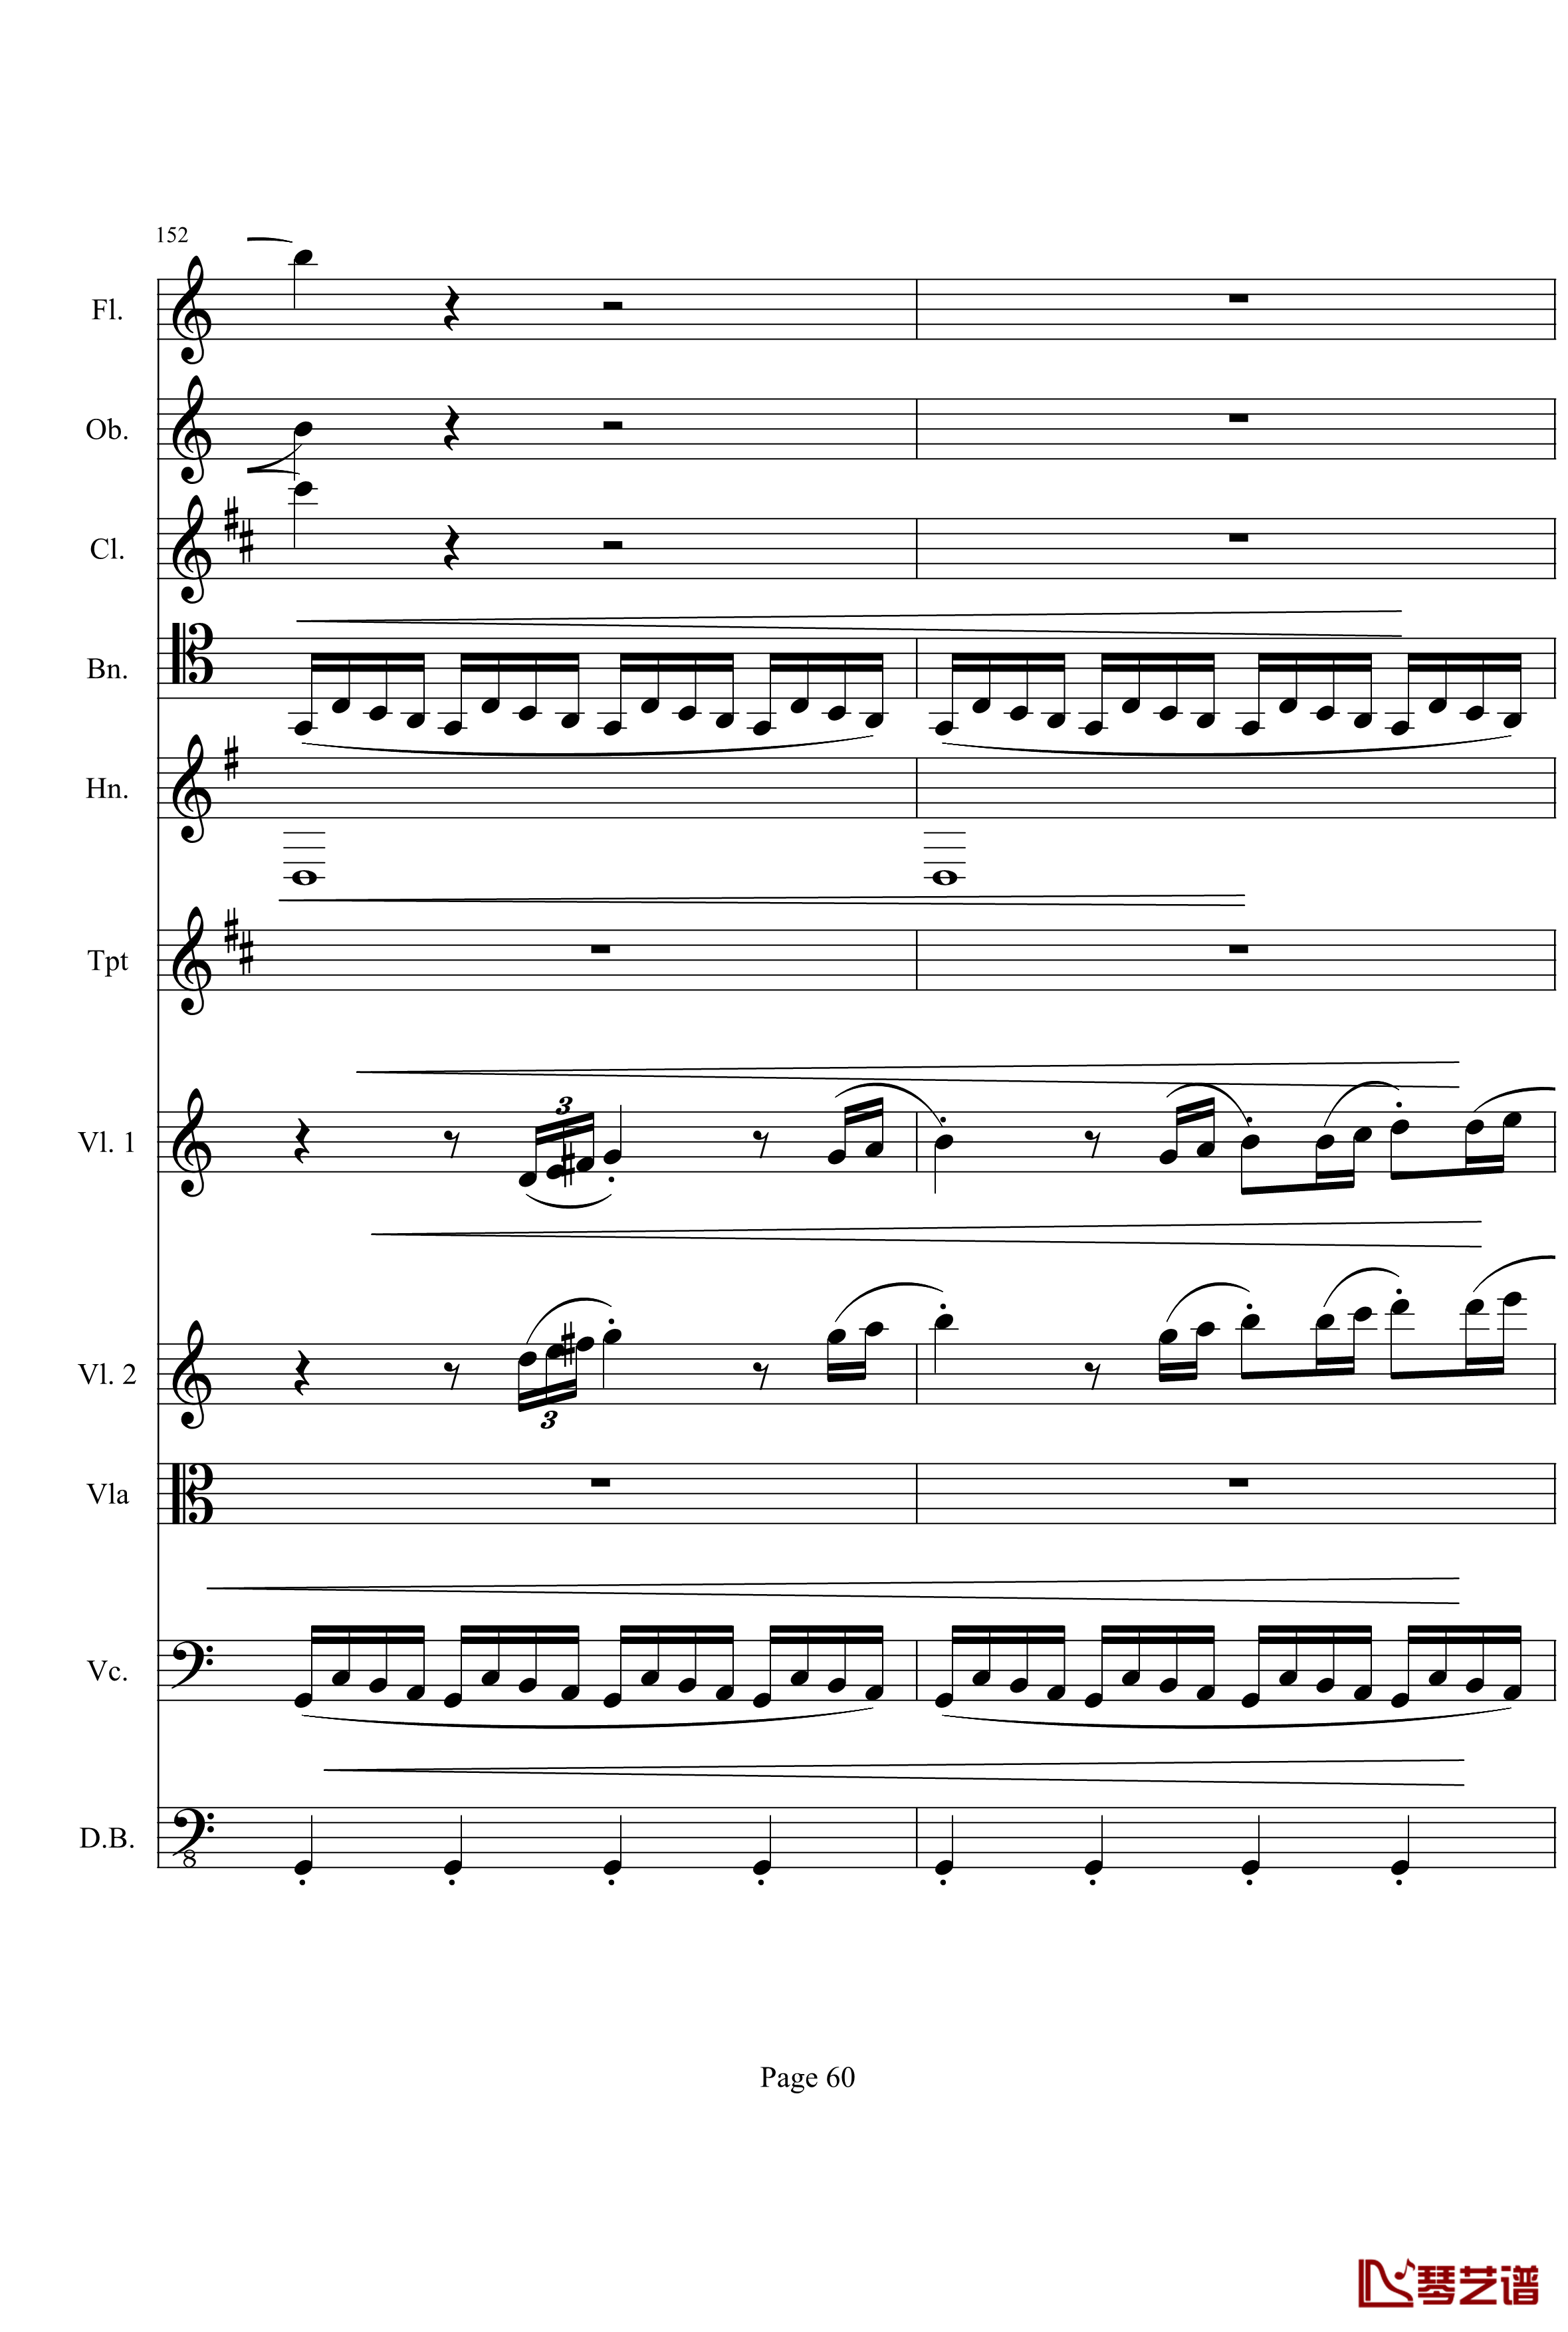 奏鸣曲之交响钢琴谱-第21首-Ⅰ-贝多芬-beethoven60